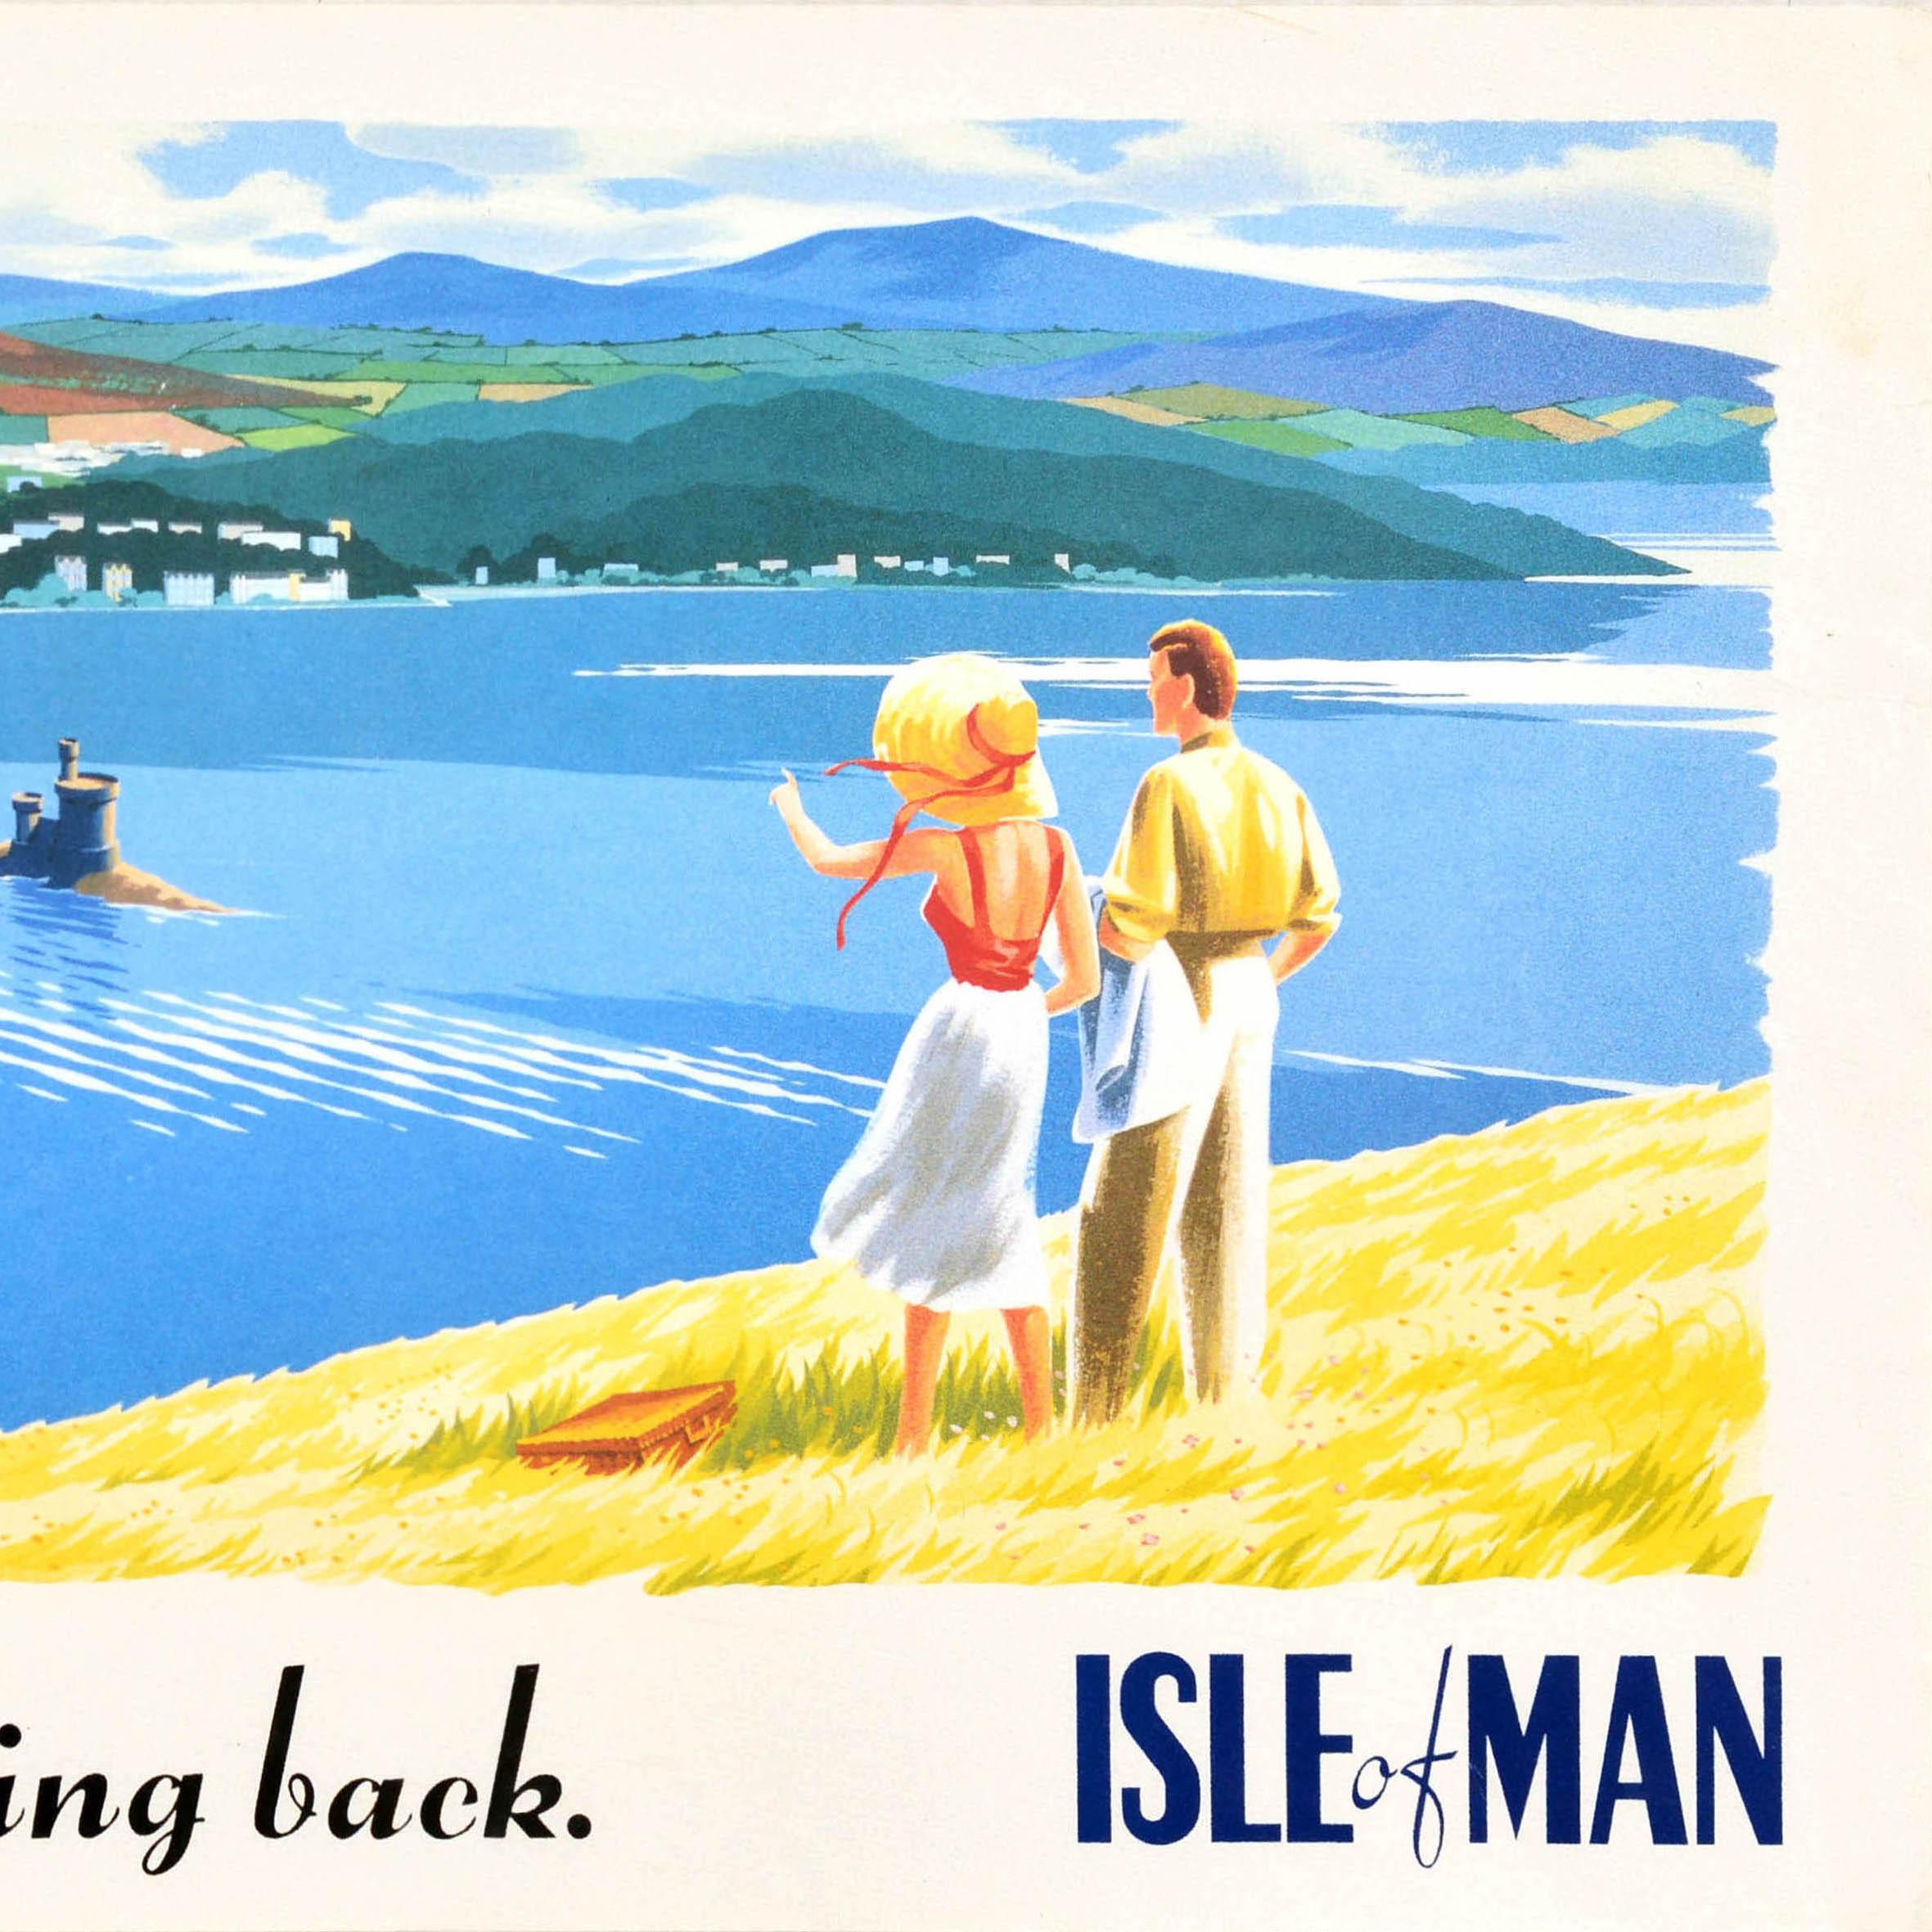 Original-Reisewerbeplakat für die Isle of Man mit einem großartigen Bild eines Paares, das die Aussicht von einem Hügel im Vordergrund betrachtet, mit einem Picknickkorb im Gras, der Mann hält seine Jacke über den Arm und die Dame mit Strohhut zeigt